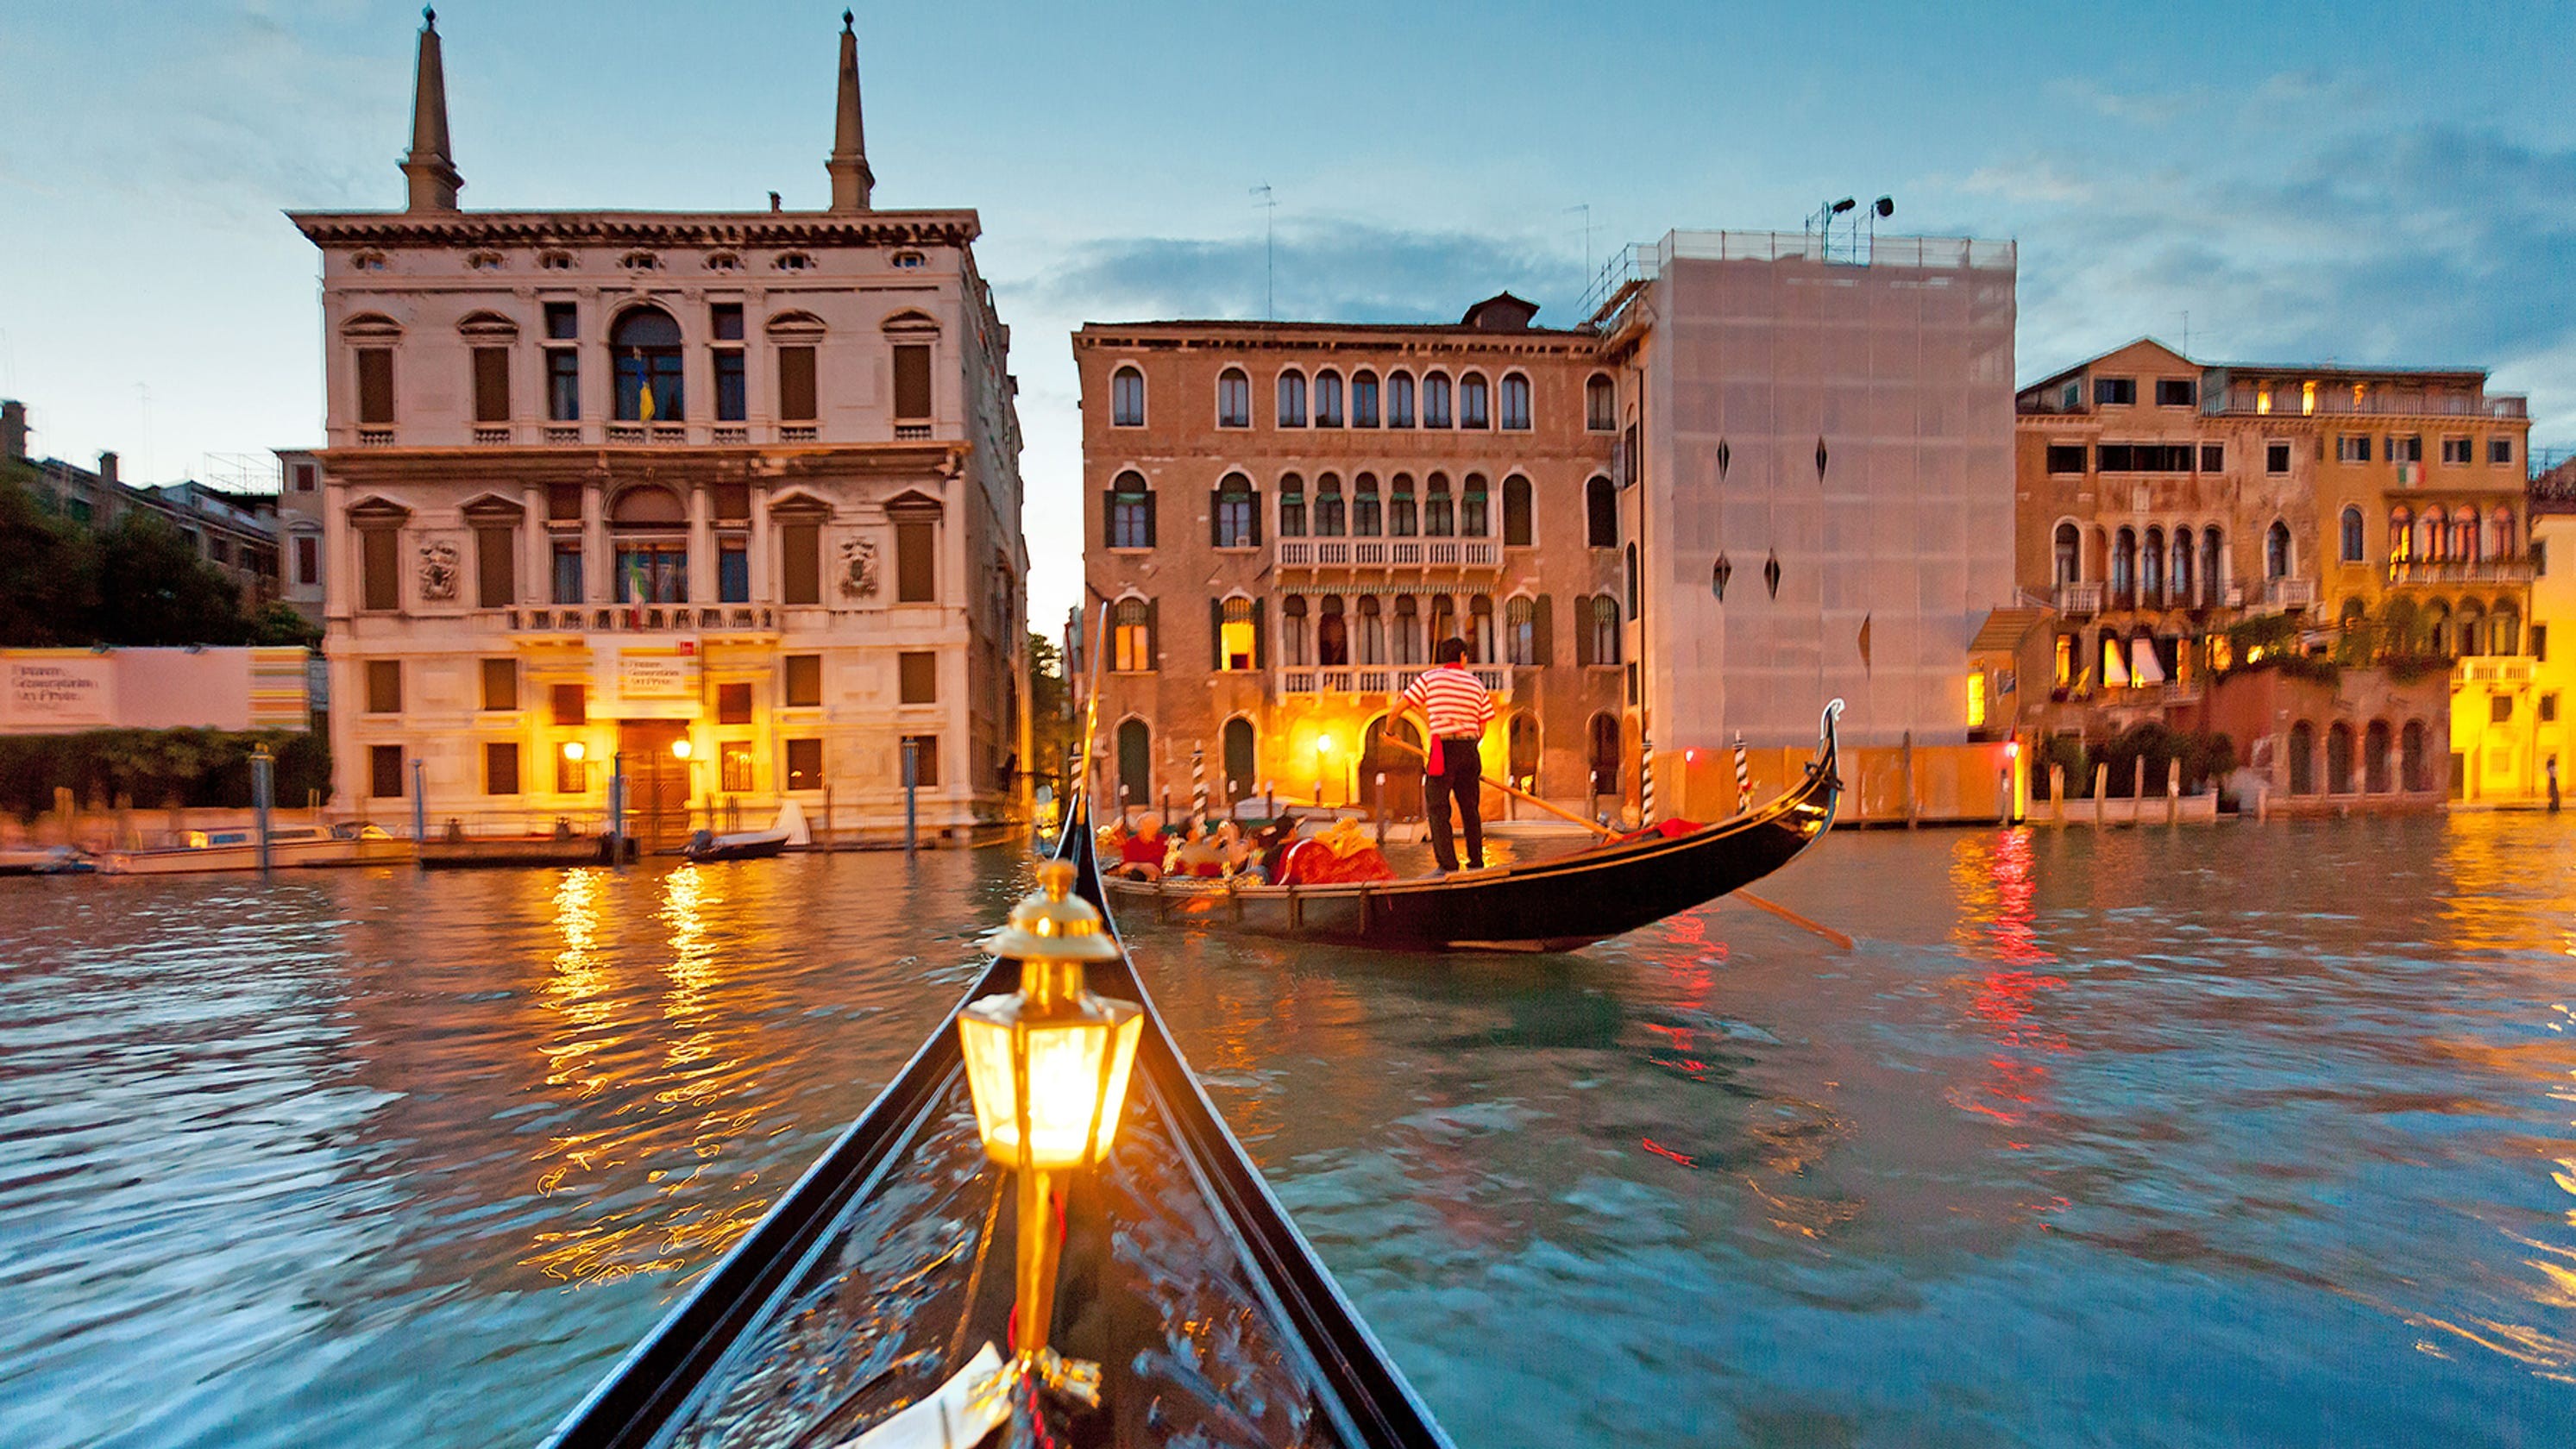 Nét thơ mộng trong từng cảnh sắc của Thành phố Venice vào ban đêm